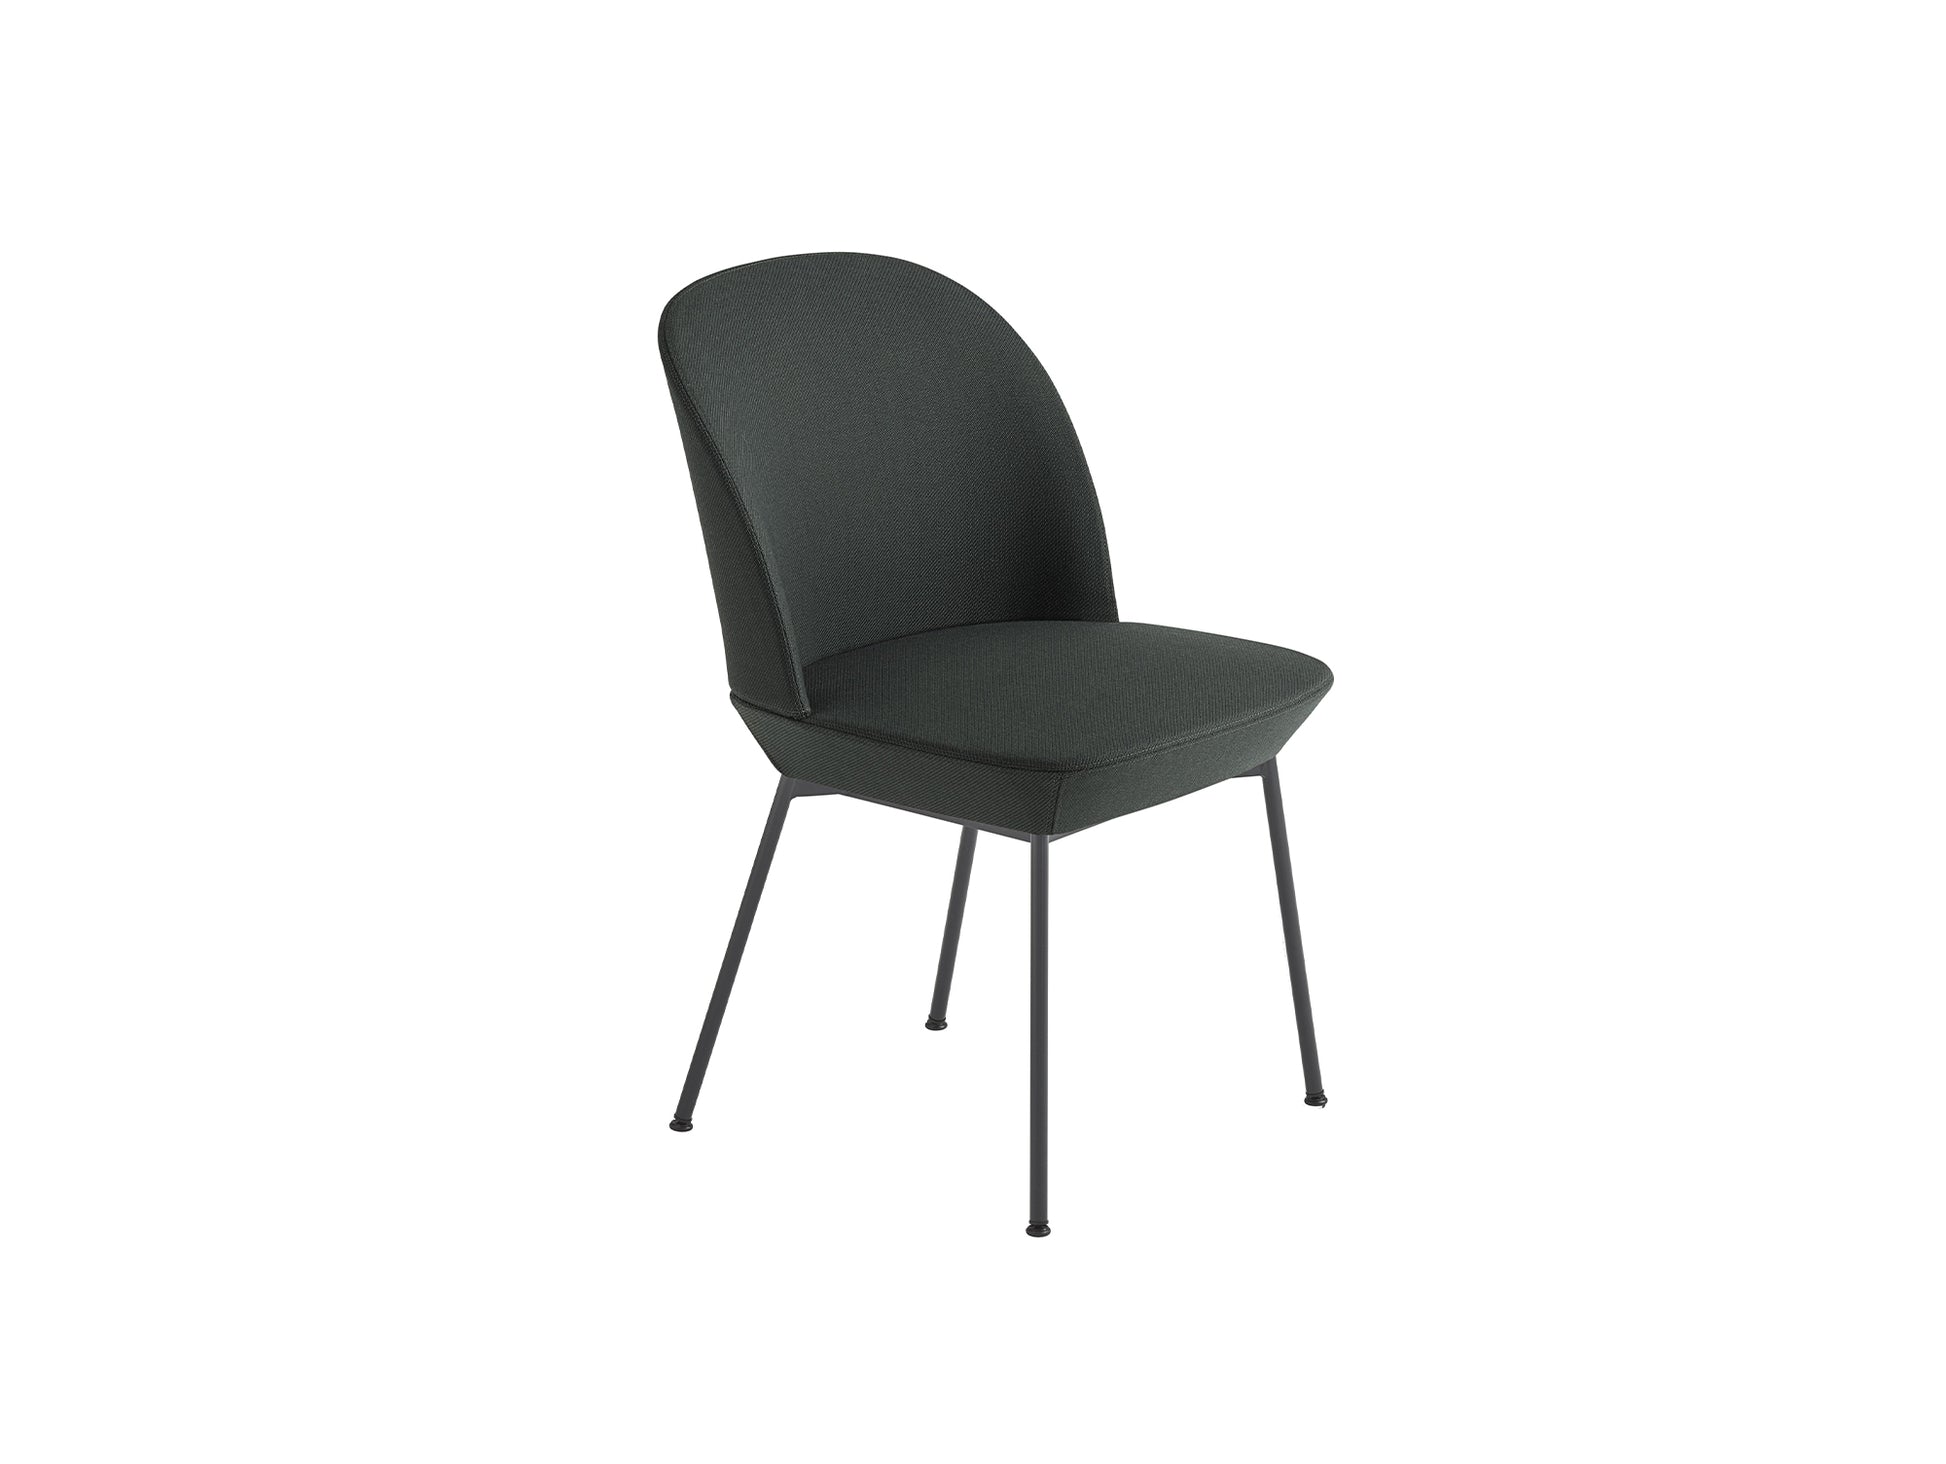 Oslo Side Chair by Muuto - Twill Weave 990 / Black Steel Base